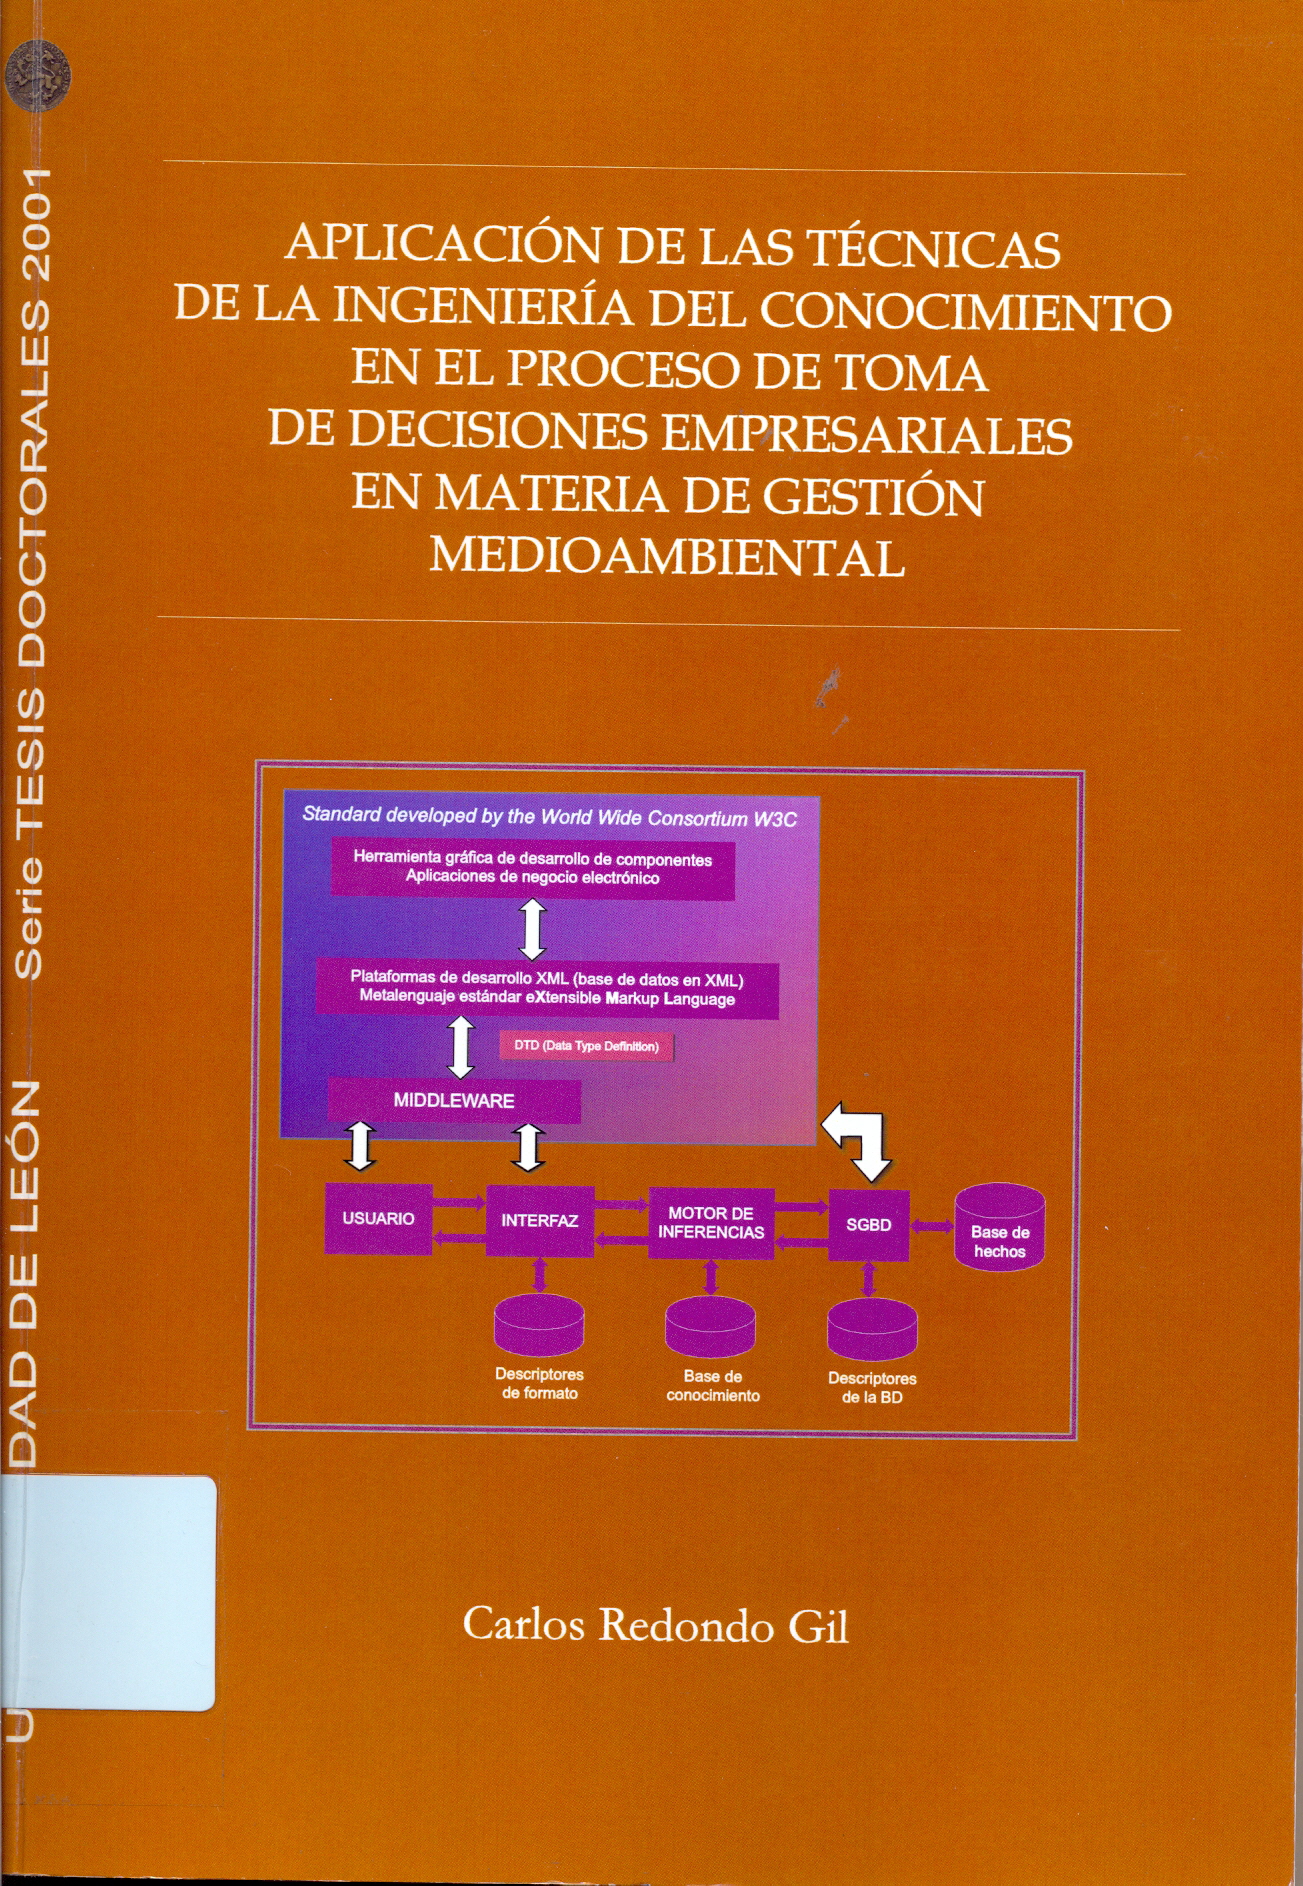 Imagen de portada del libro Aplicación de las técnicas de la ingeniería del conocimiento en el proceso de toma de decisiones empresariales en materia de gestión medioambiental